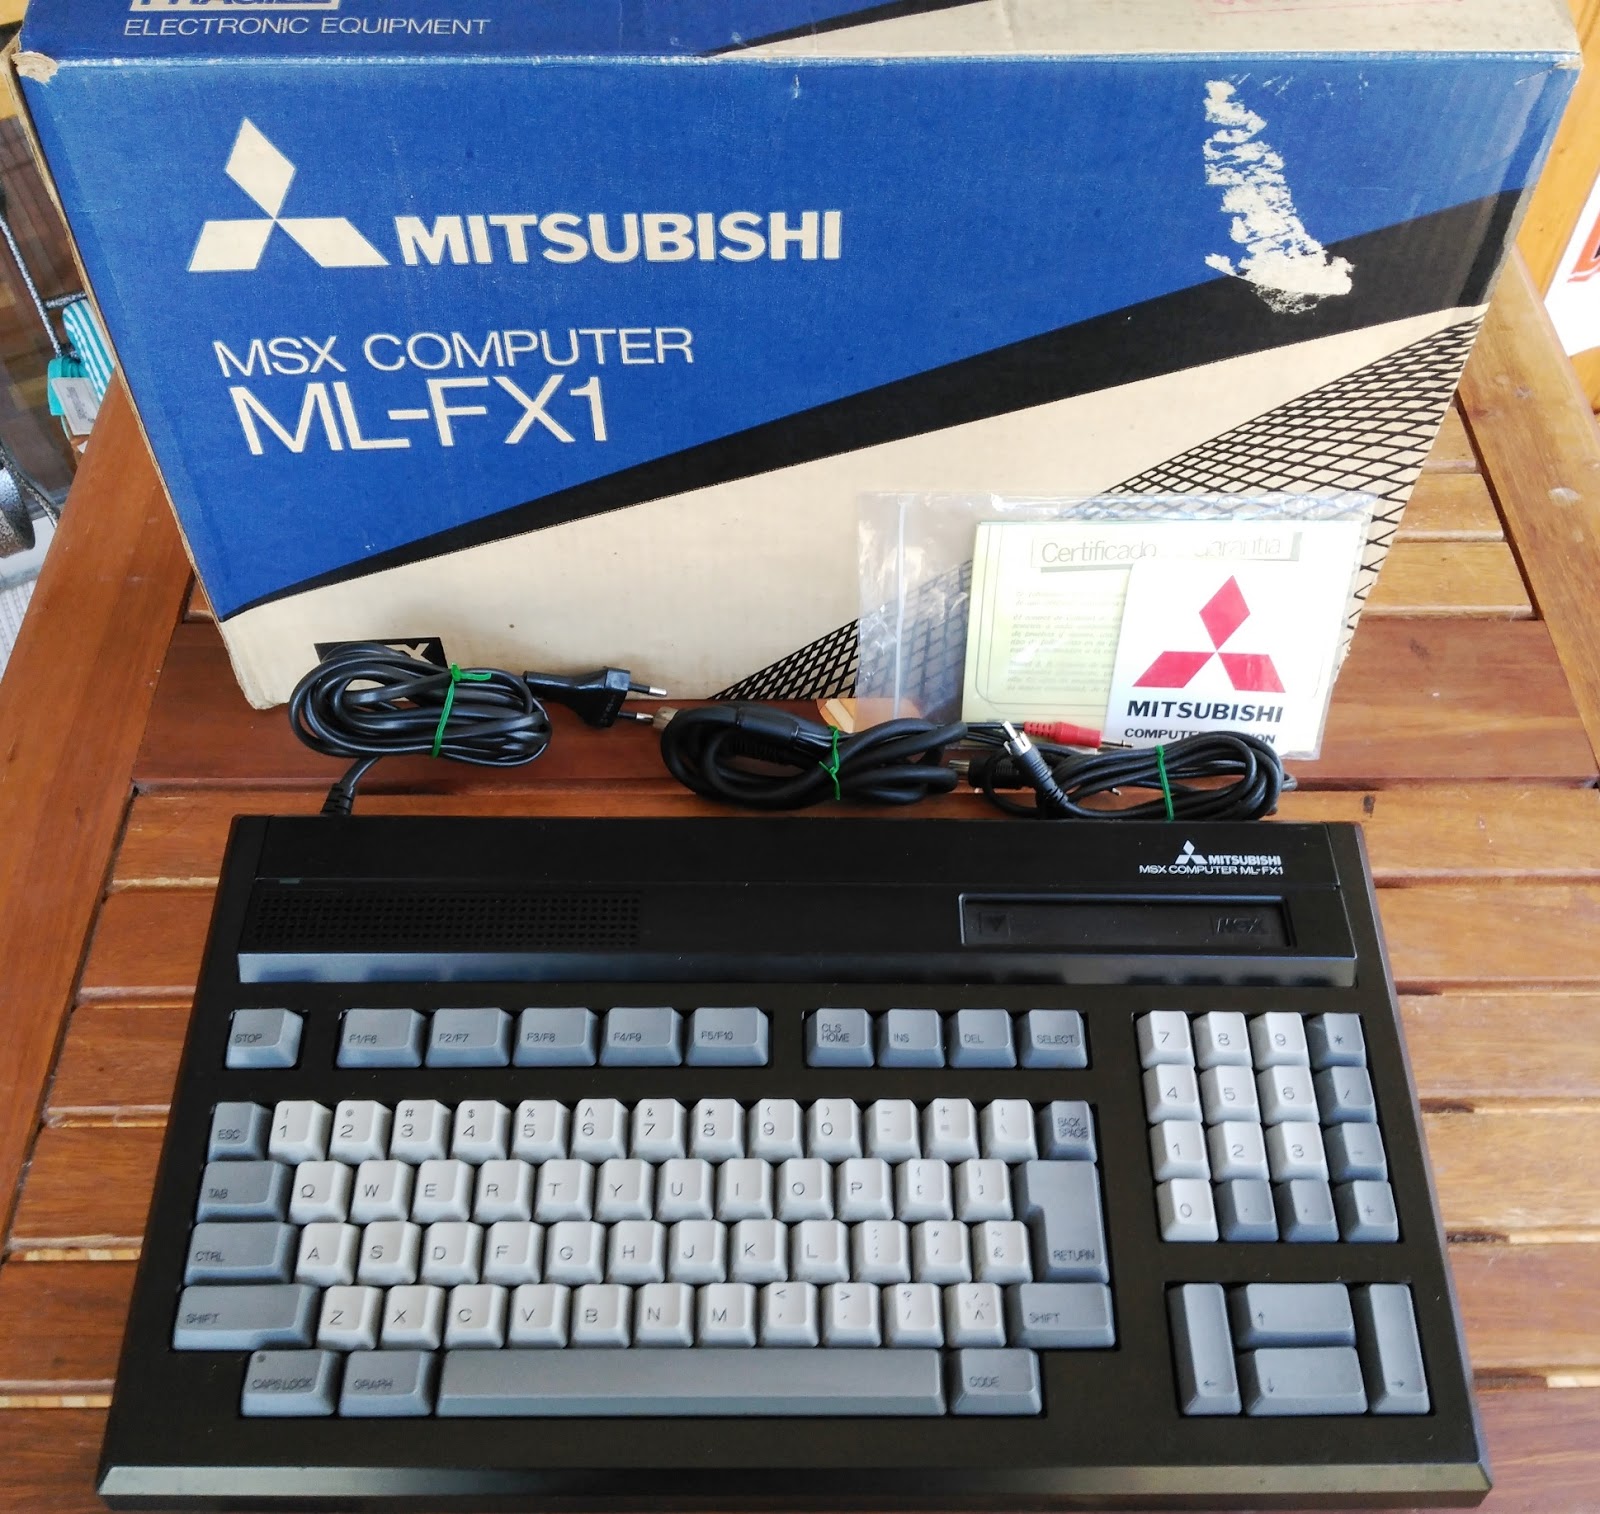 Mitsubishi компьютер. Митсубиши компьютер. Mitsubishi ml3015 FX. Ноутбук Мицубиси. Компьютер Митсубиси игровой.